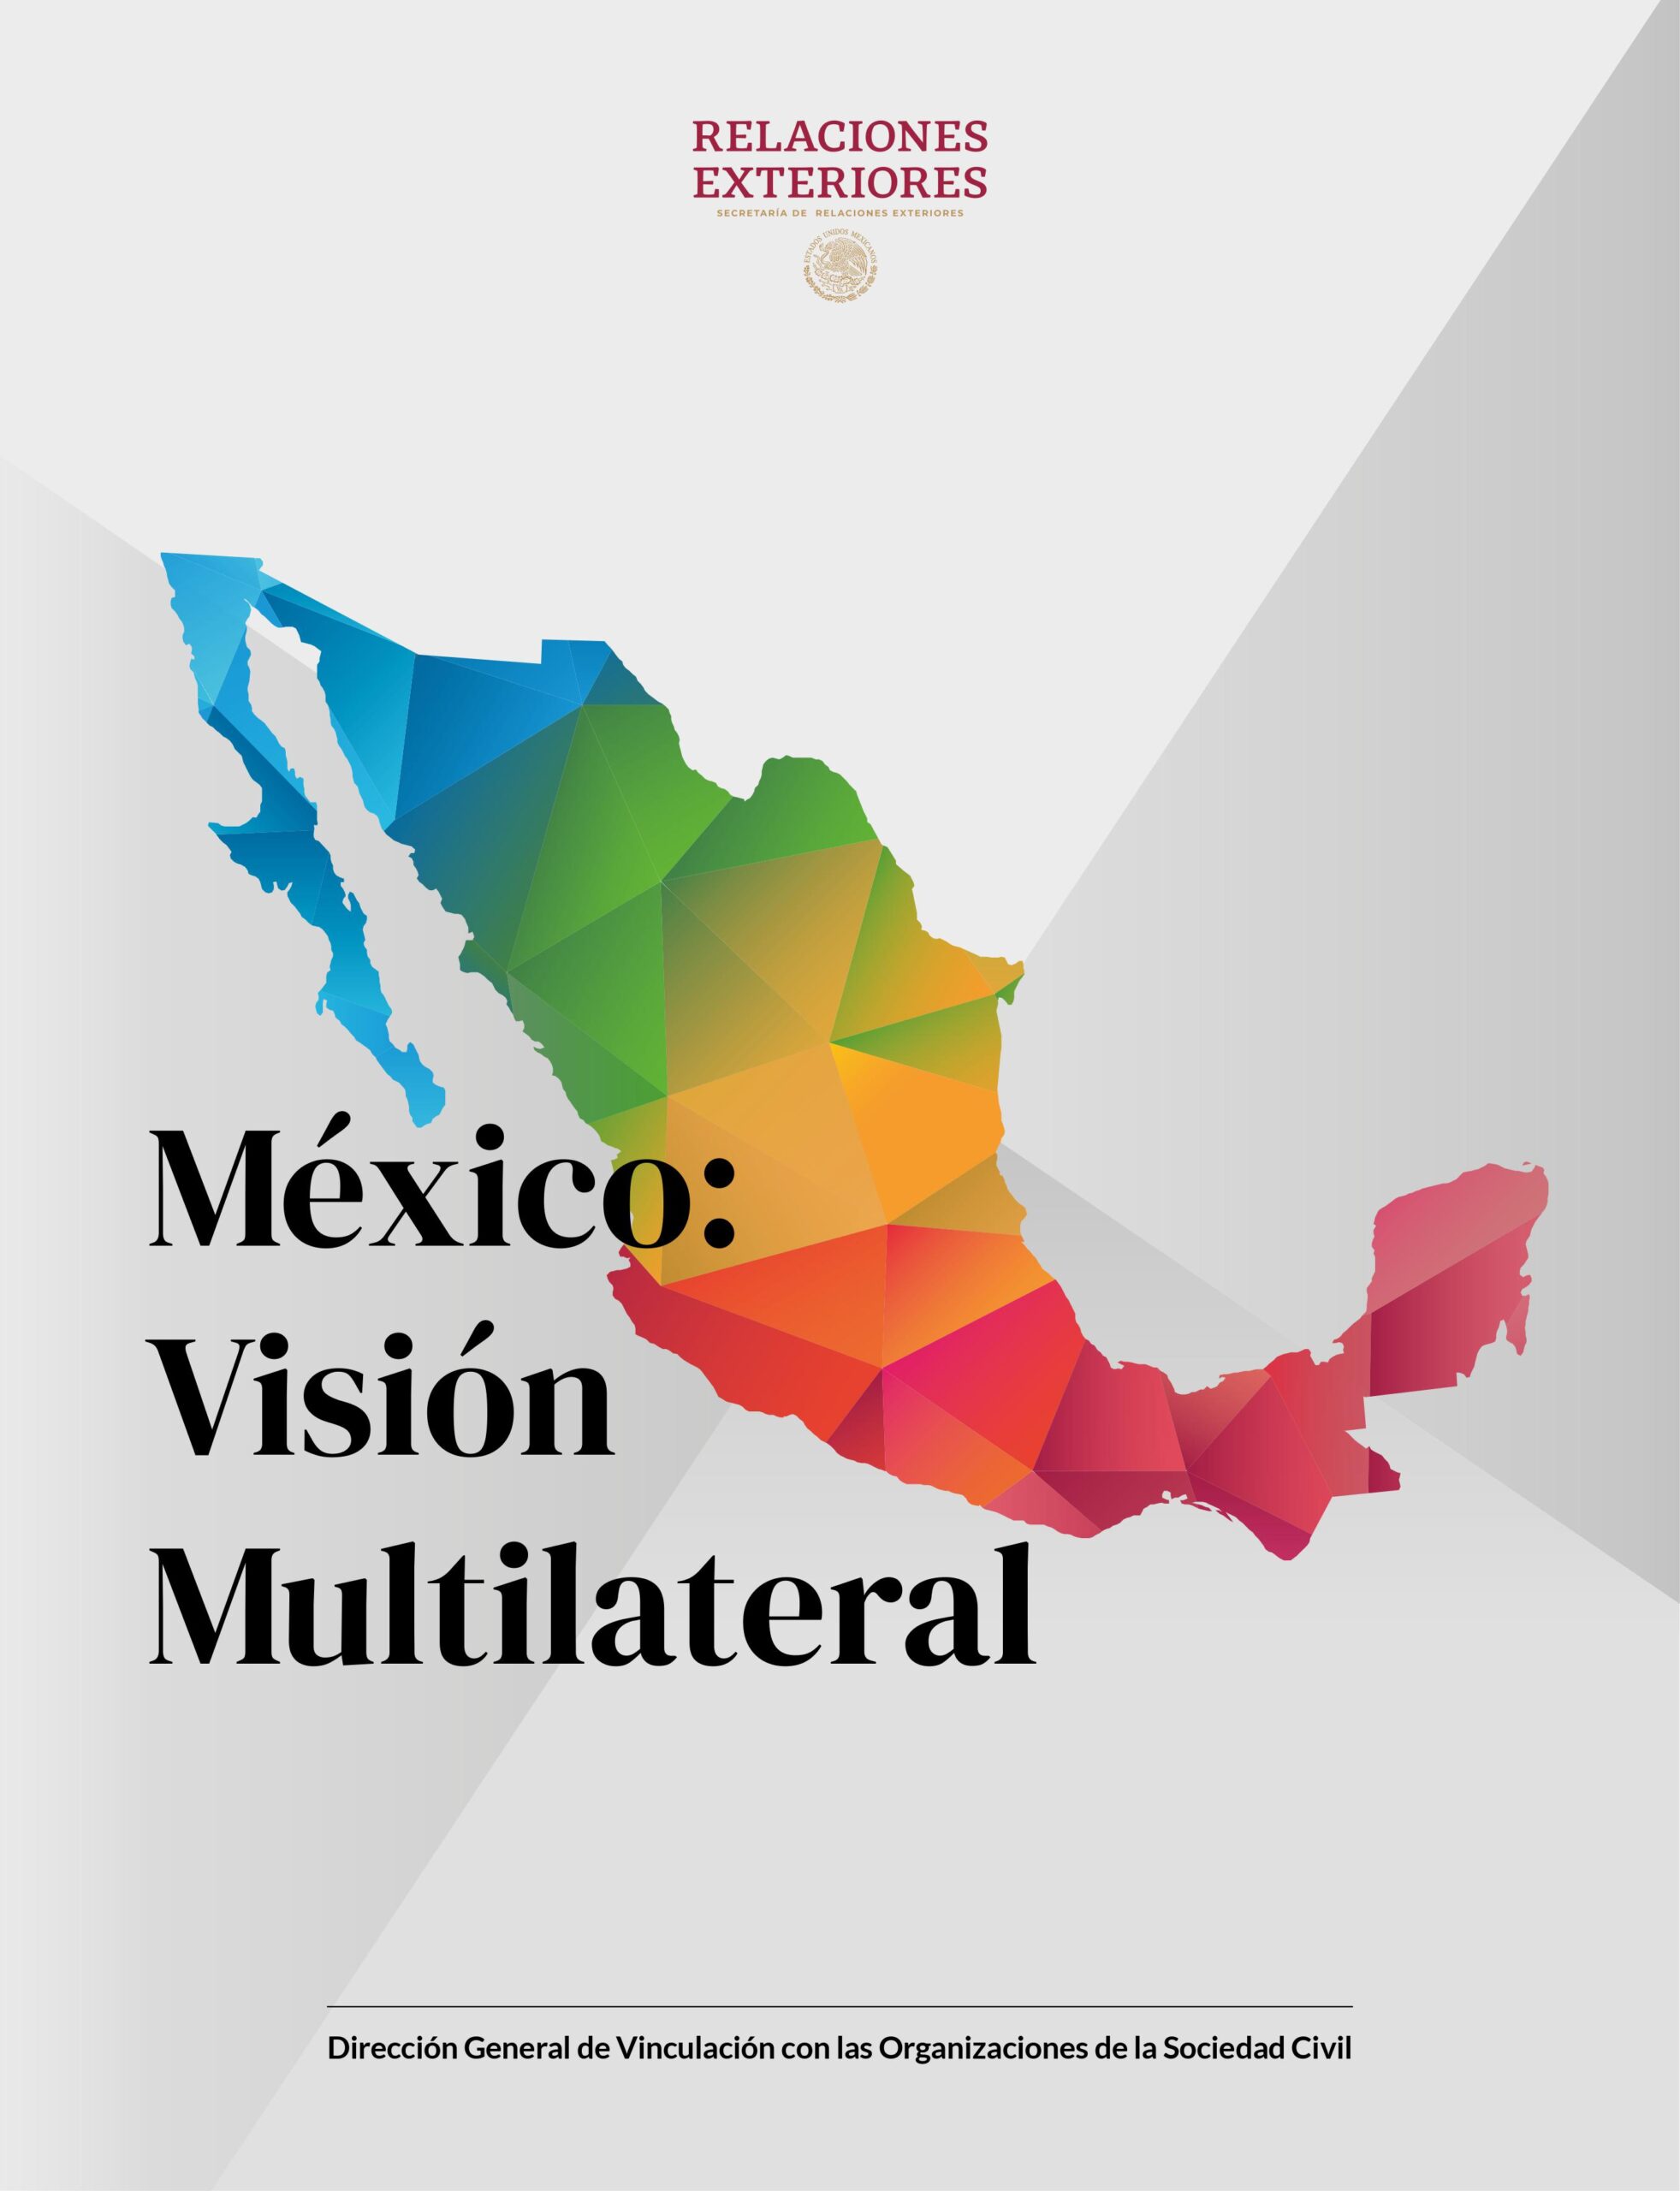 Presenta Secretaría de Relaciones Exteriores el libro “México: Visión Multilateral”